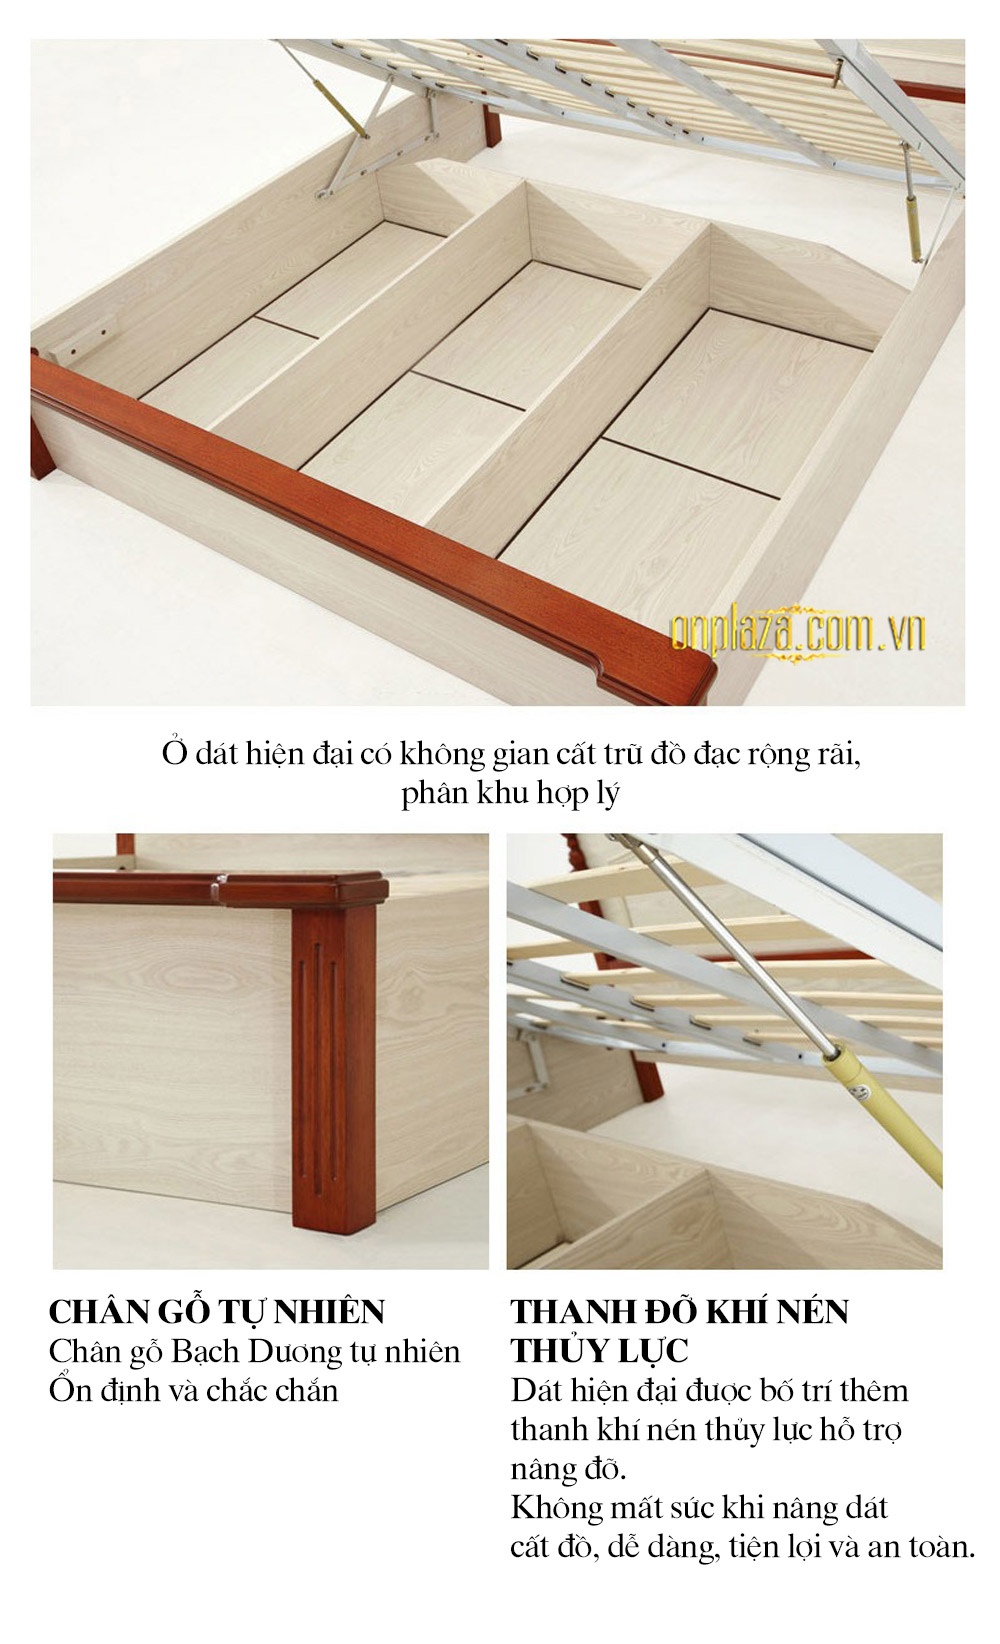 Bộ giường ngủ gỗ phong cách Địa Trung Hải (dát truyền thống) G158